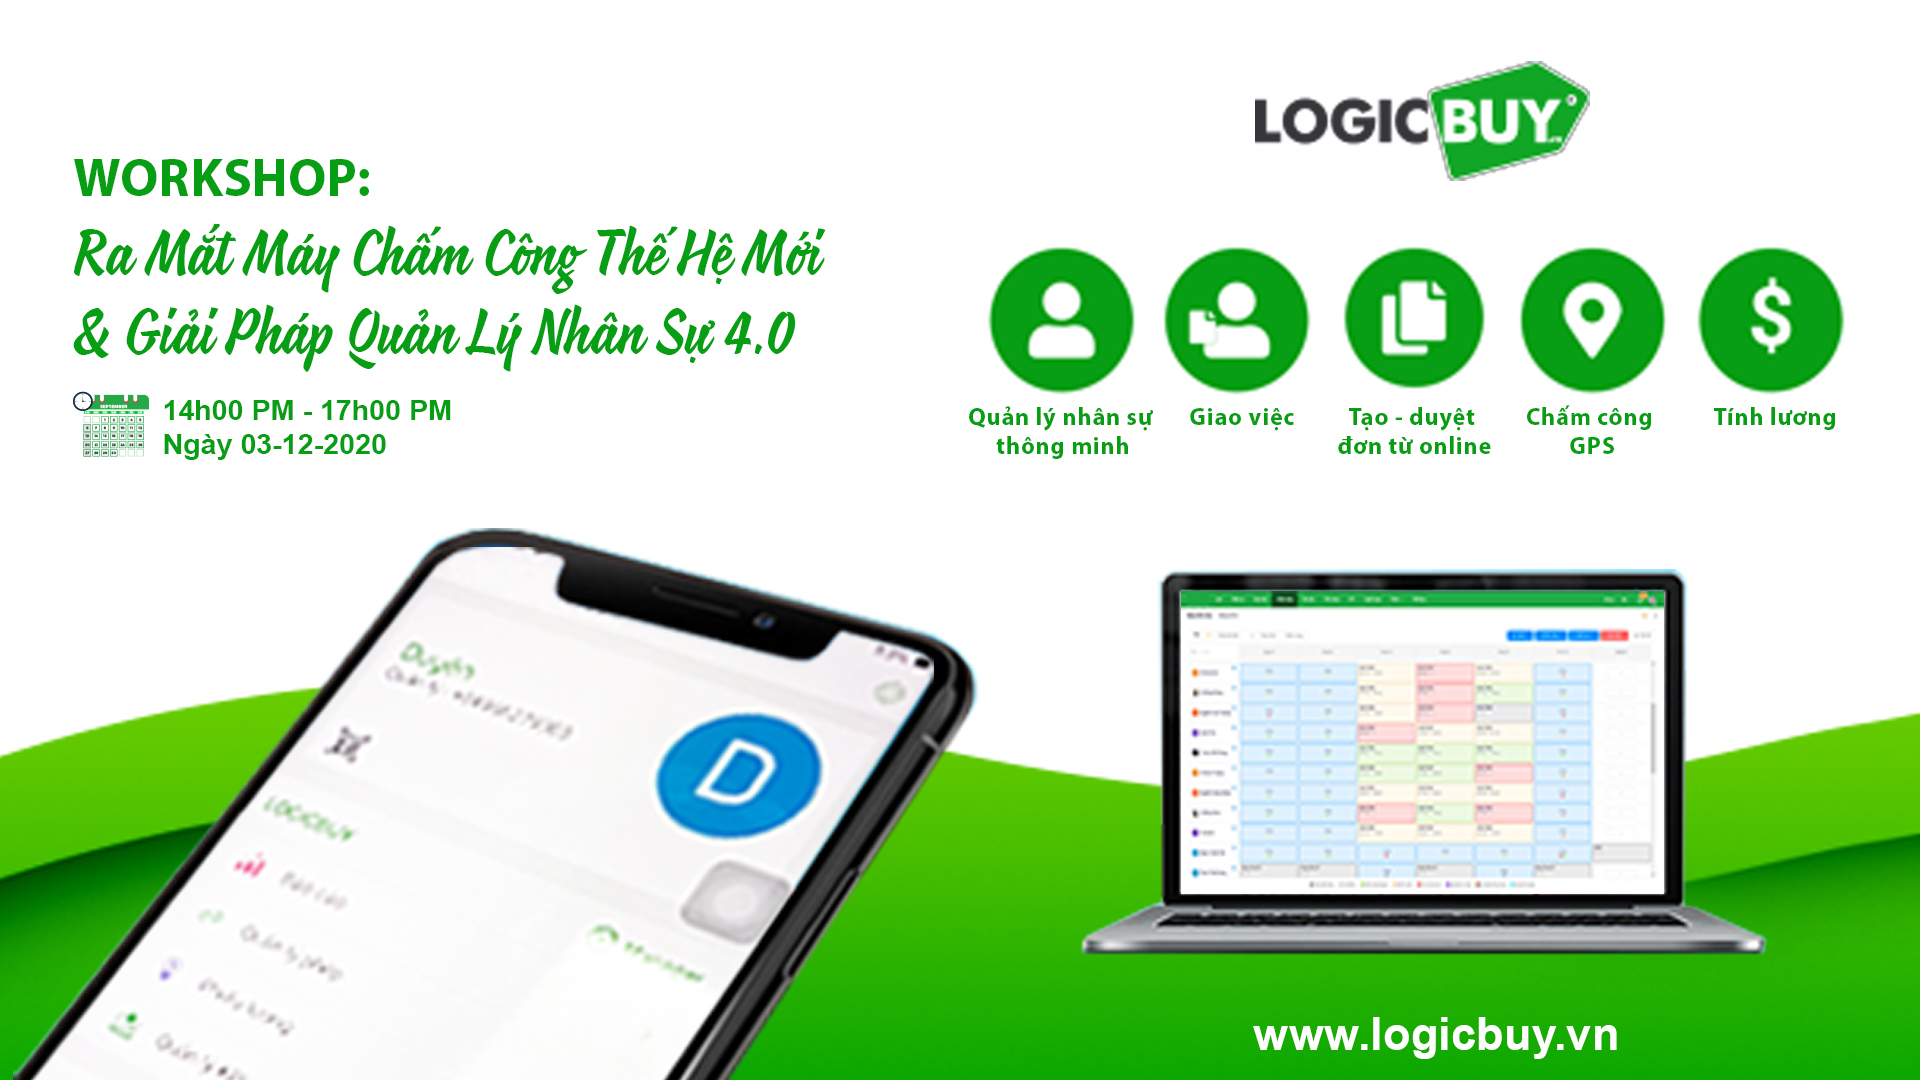 LogicBUY ra mắt Sản phẩm và Giải pháp quản lý nhân sự hoàn toàn mới.